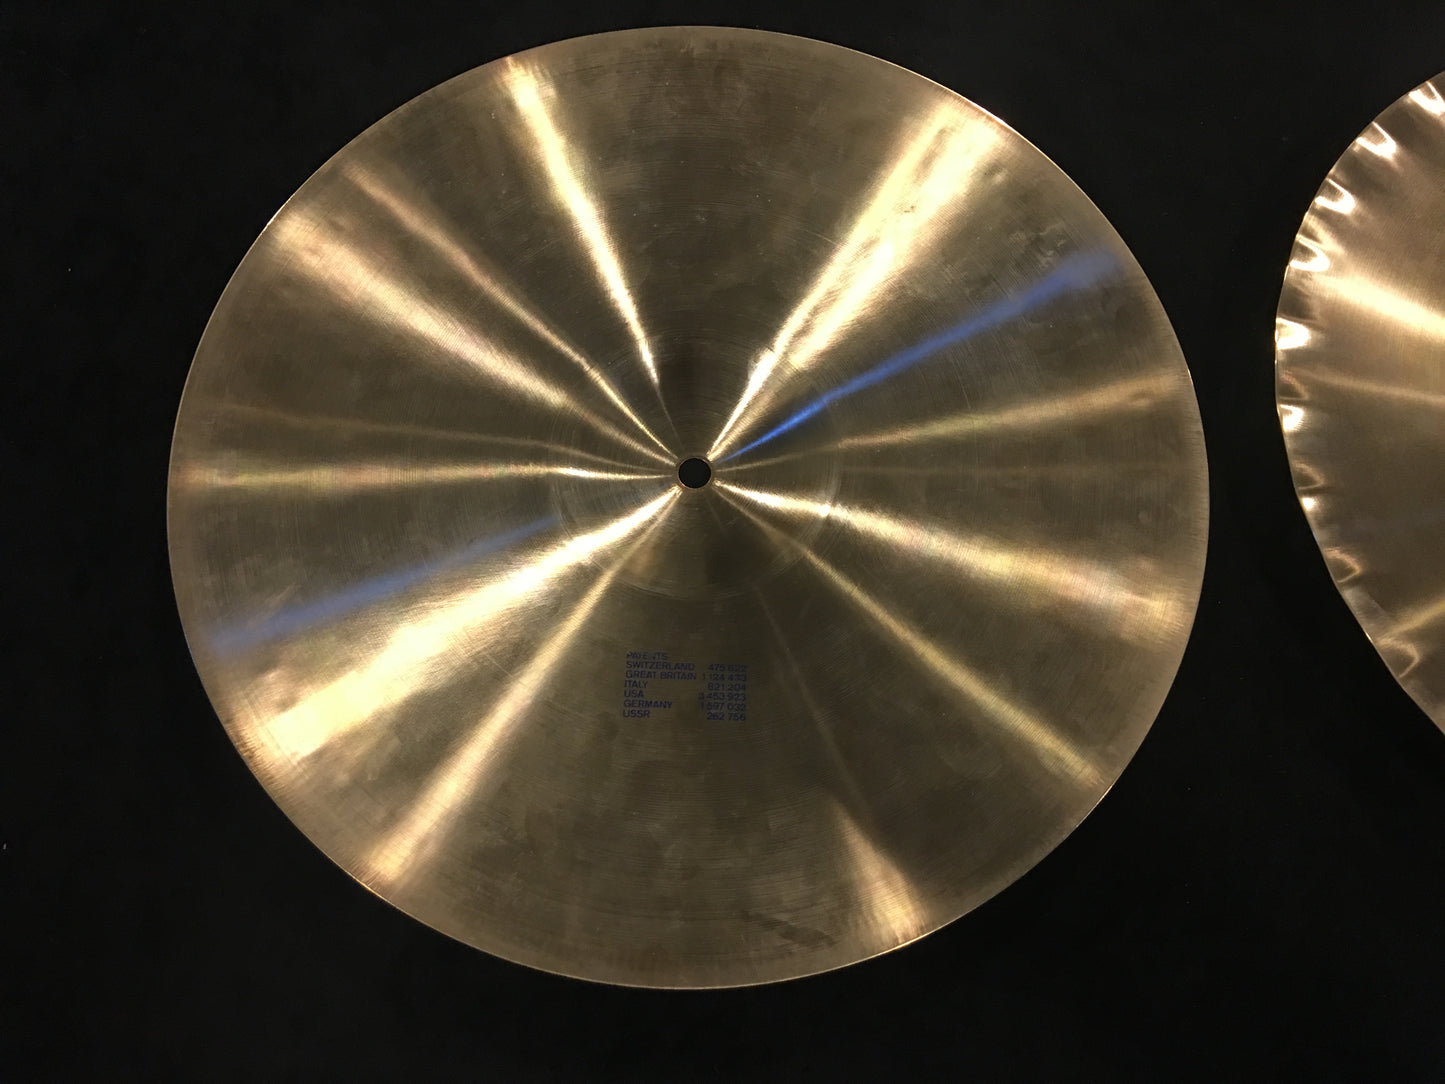 14" Paiste Formula 602 Blue Label Sound Edge Hi-Hat Cymbals #481